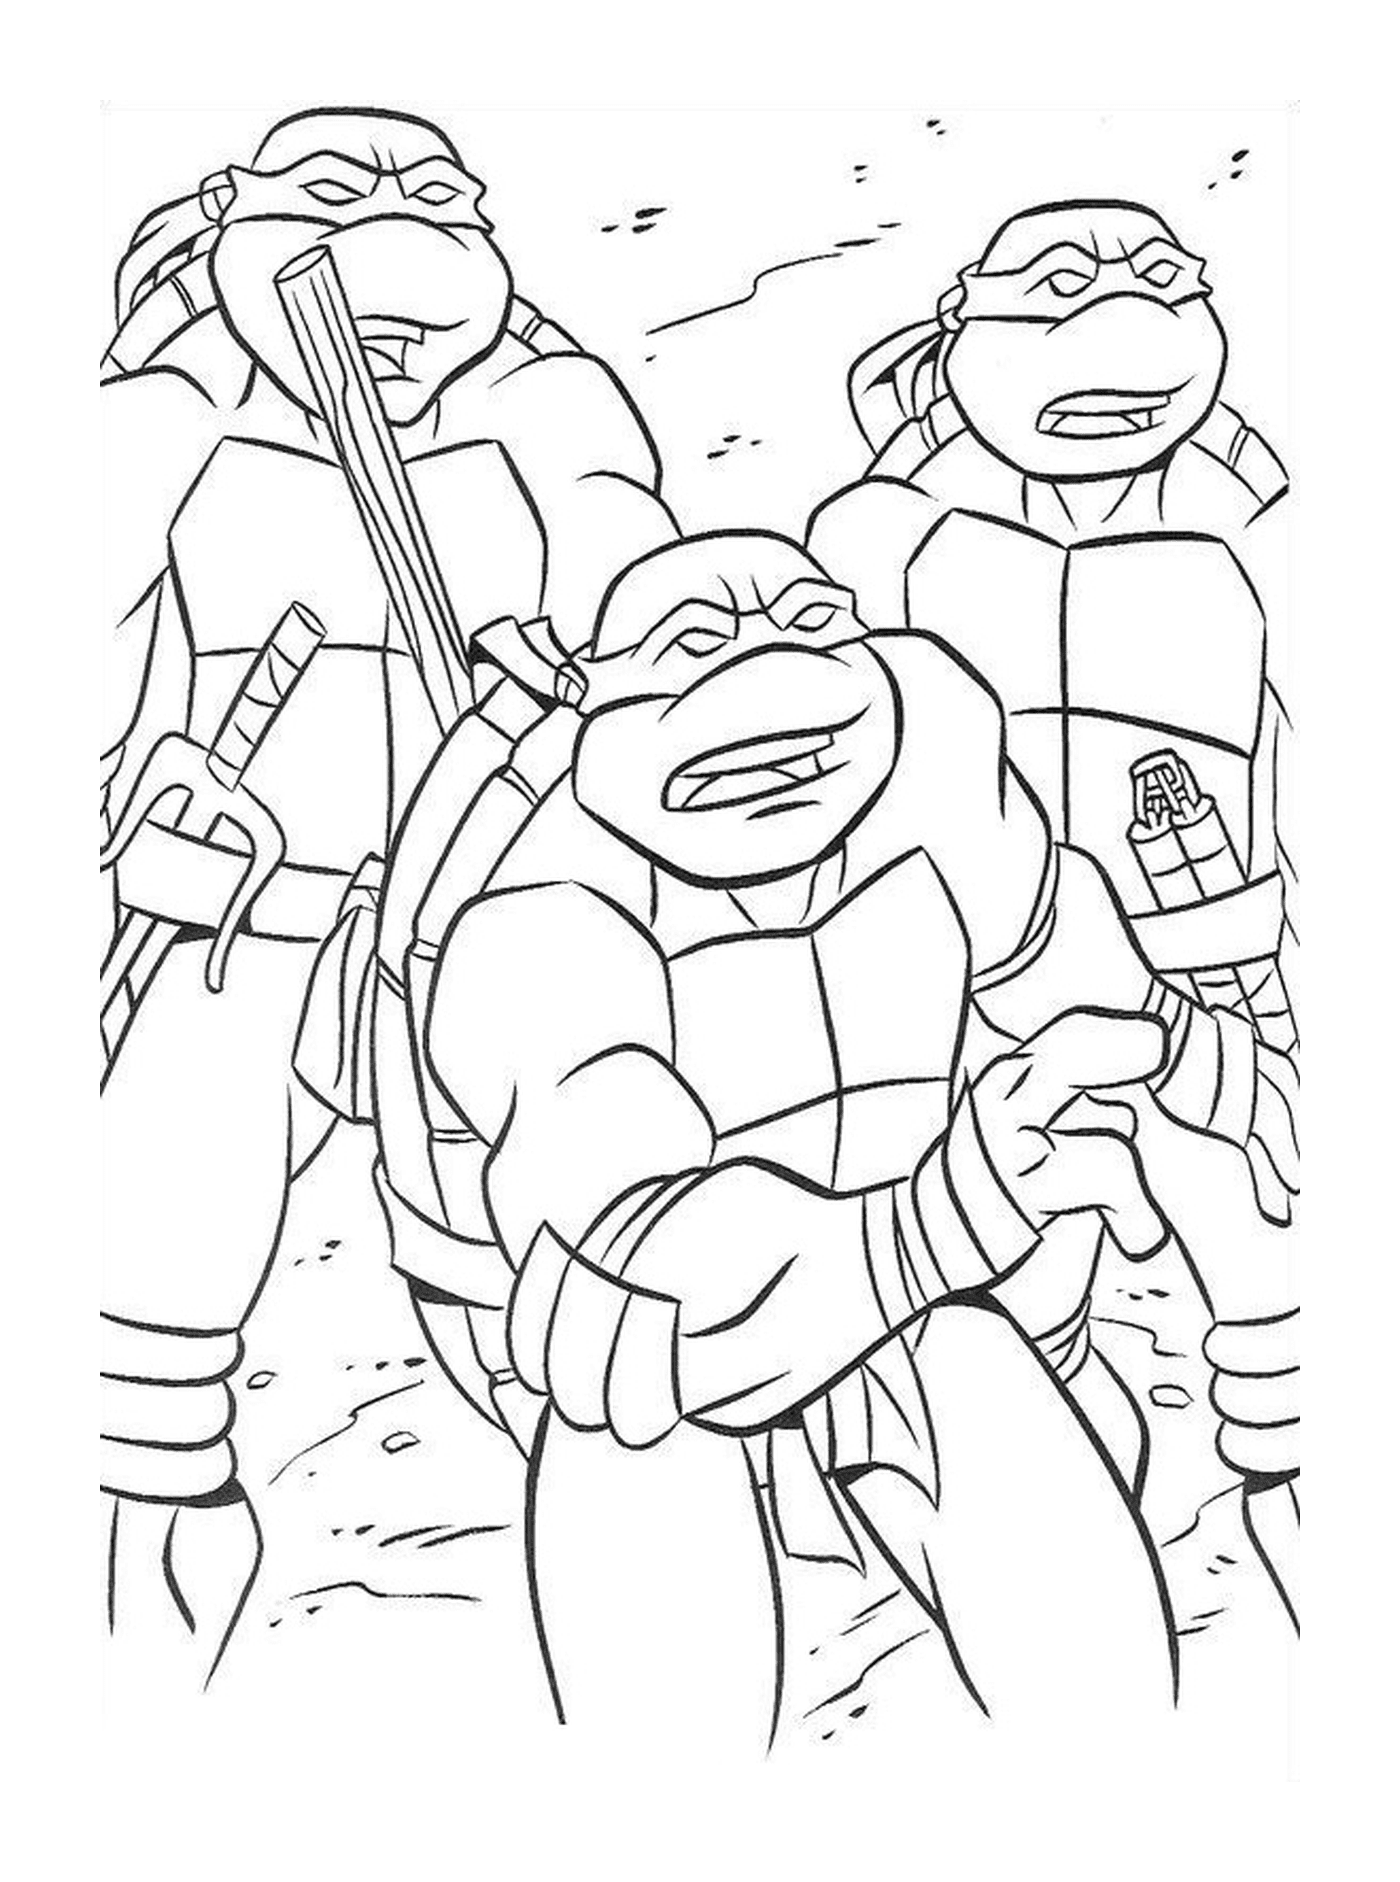  Gruppo di solidarietà tartarughe ninja 